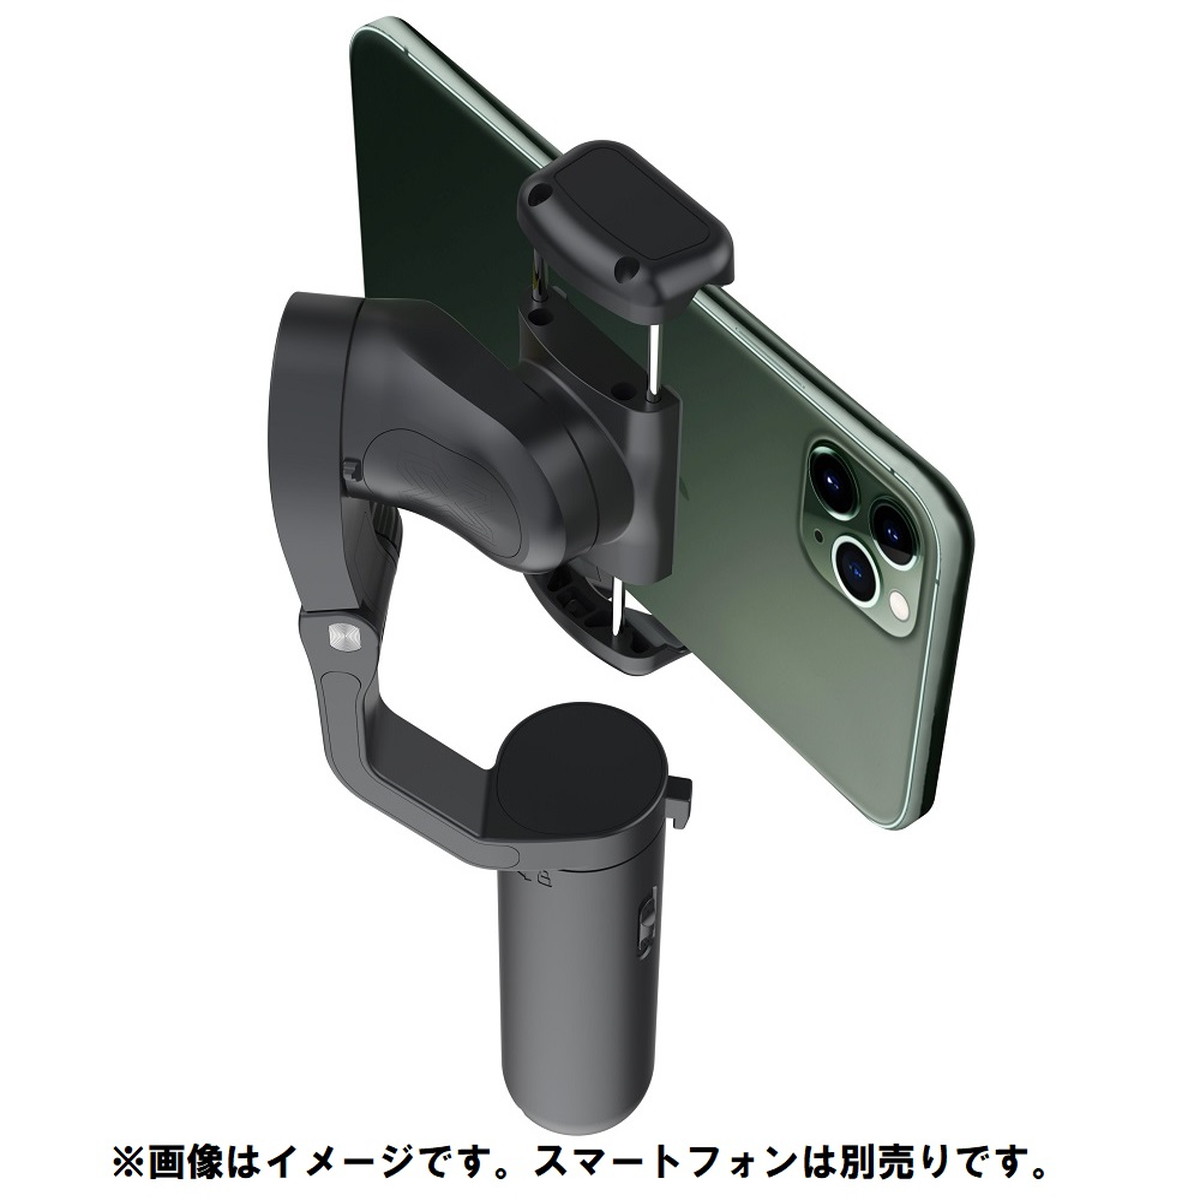 ■iSteady X Black スマートフォン用３軸ジンバル 折りたたみ式